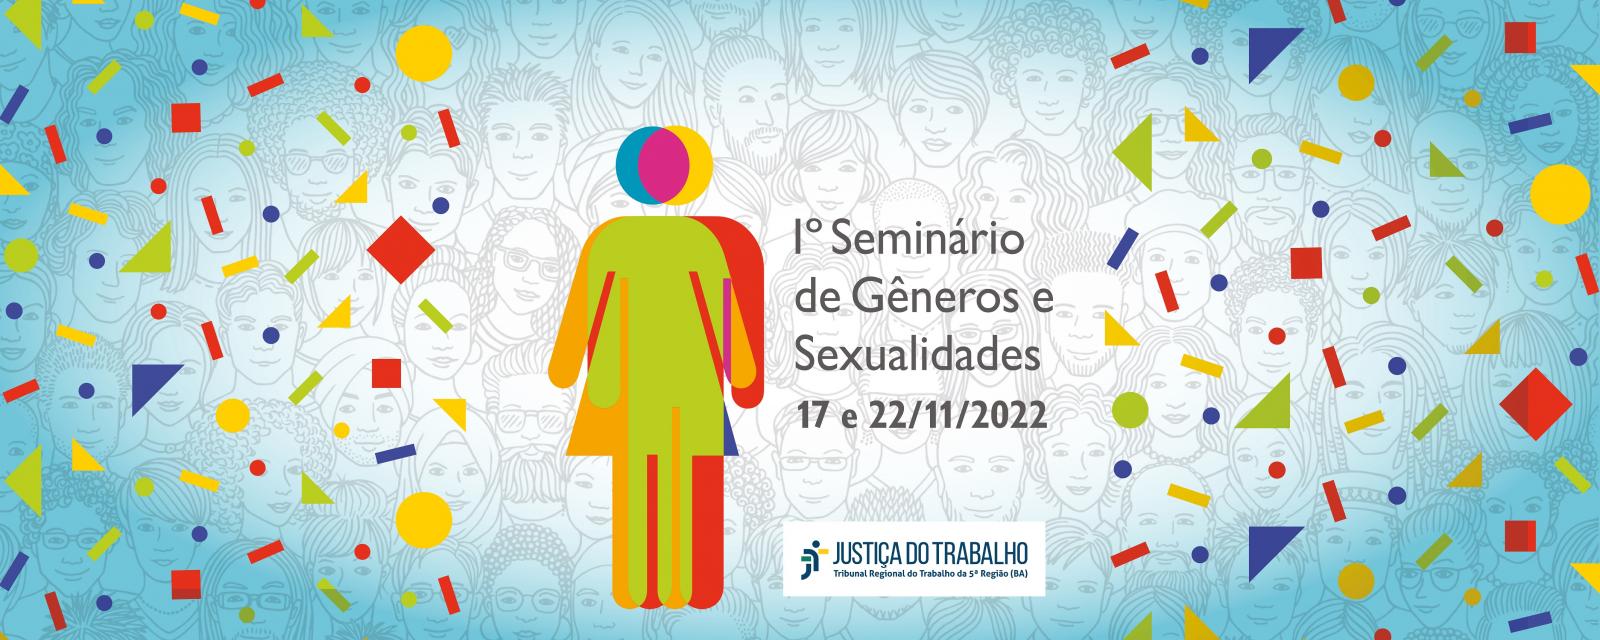 Banner sobre o 1º Seminário de Gêneros e Sexualidades do TRT-5